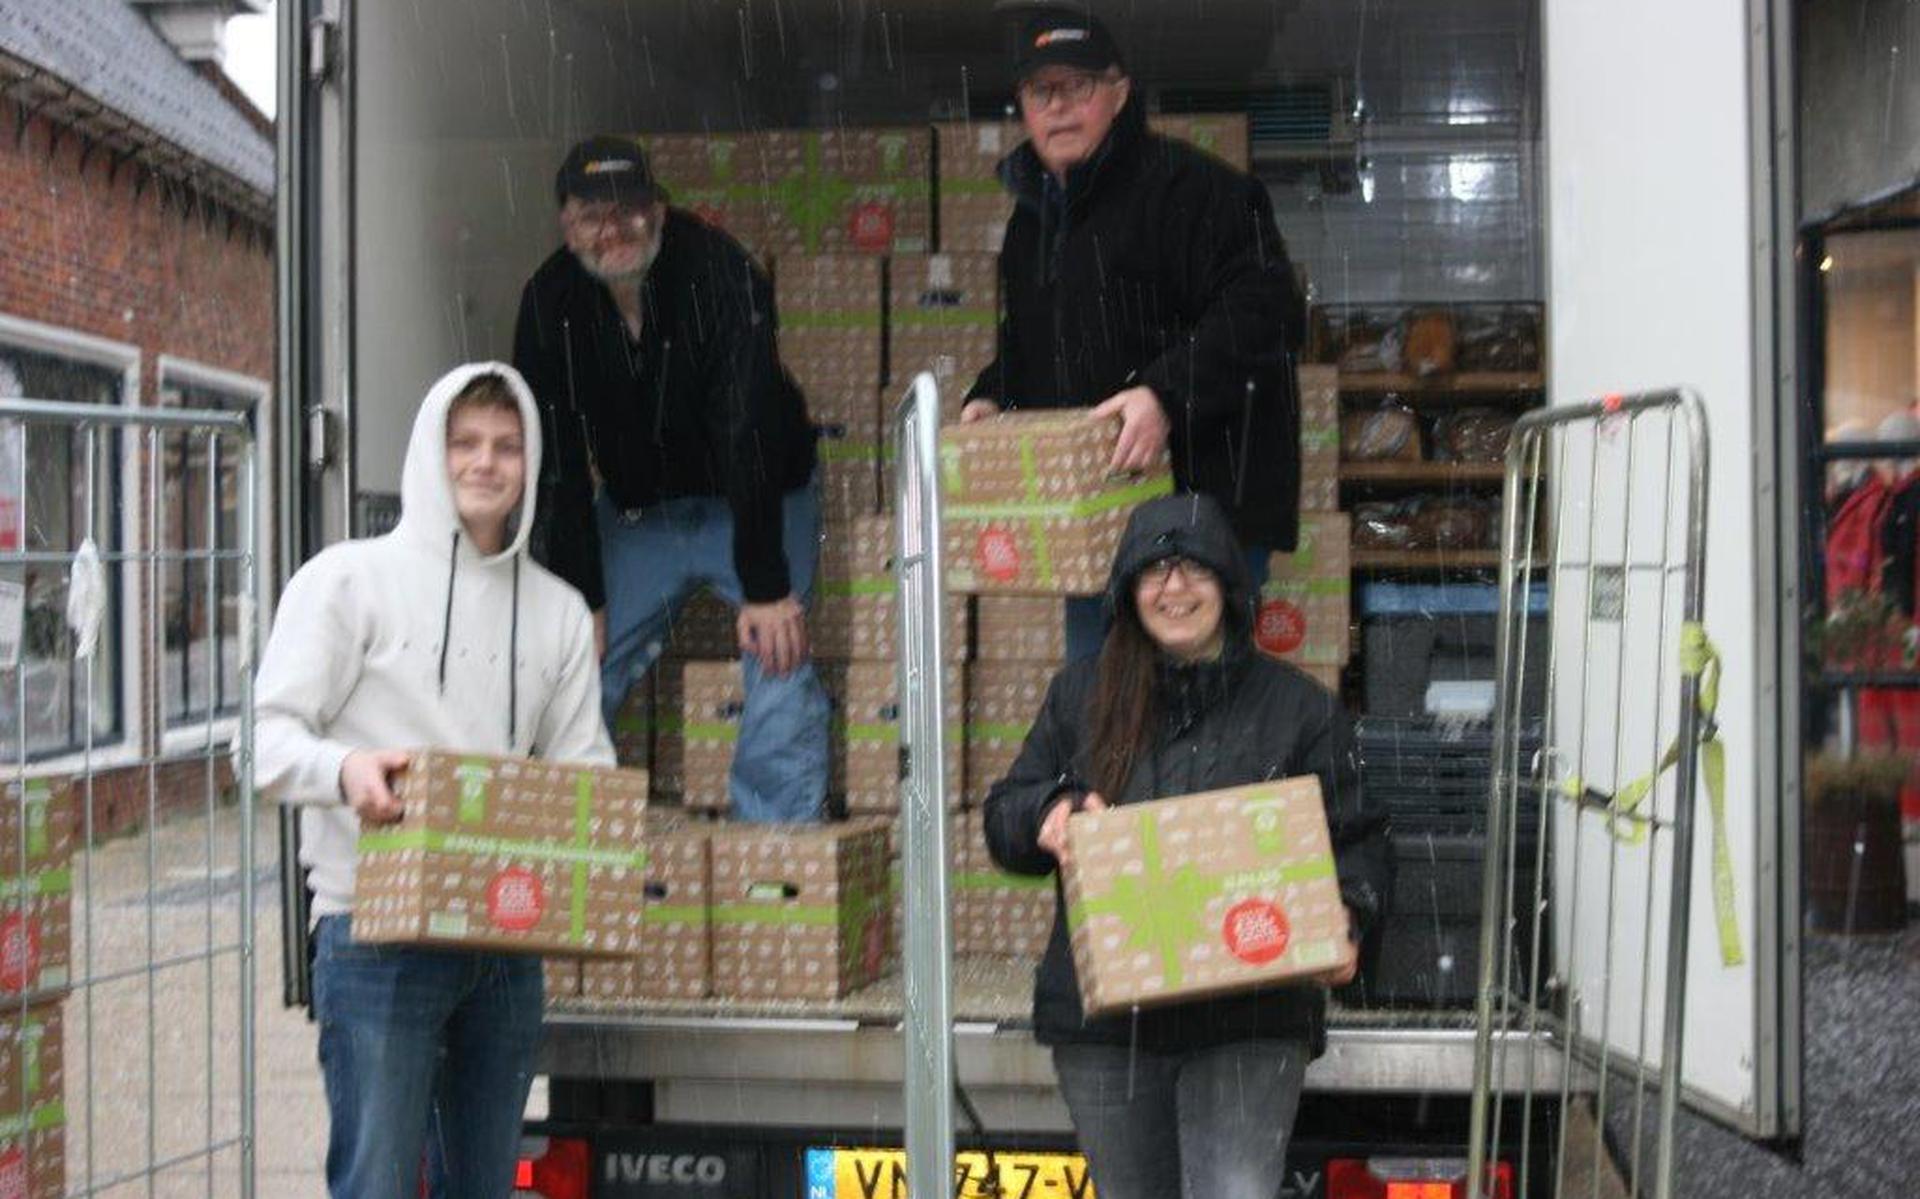 Medewerkers van een PLUS-winkel en de voedselbank zijn de dozen tijdens een fikse hagelbui aan het inladen. Eigen foto